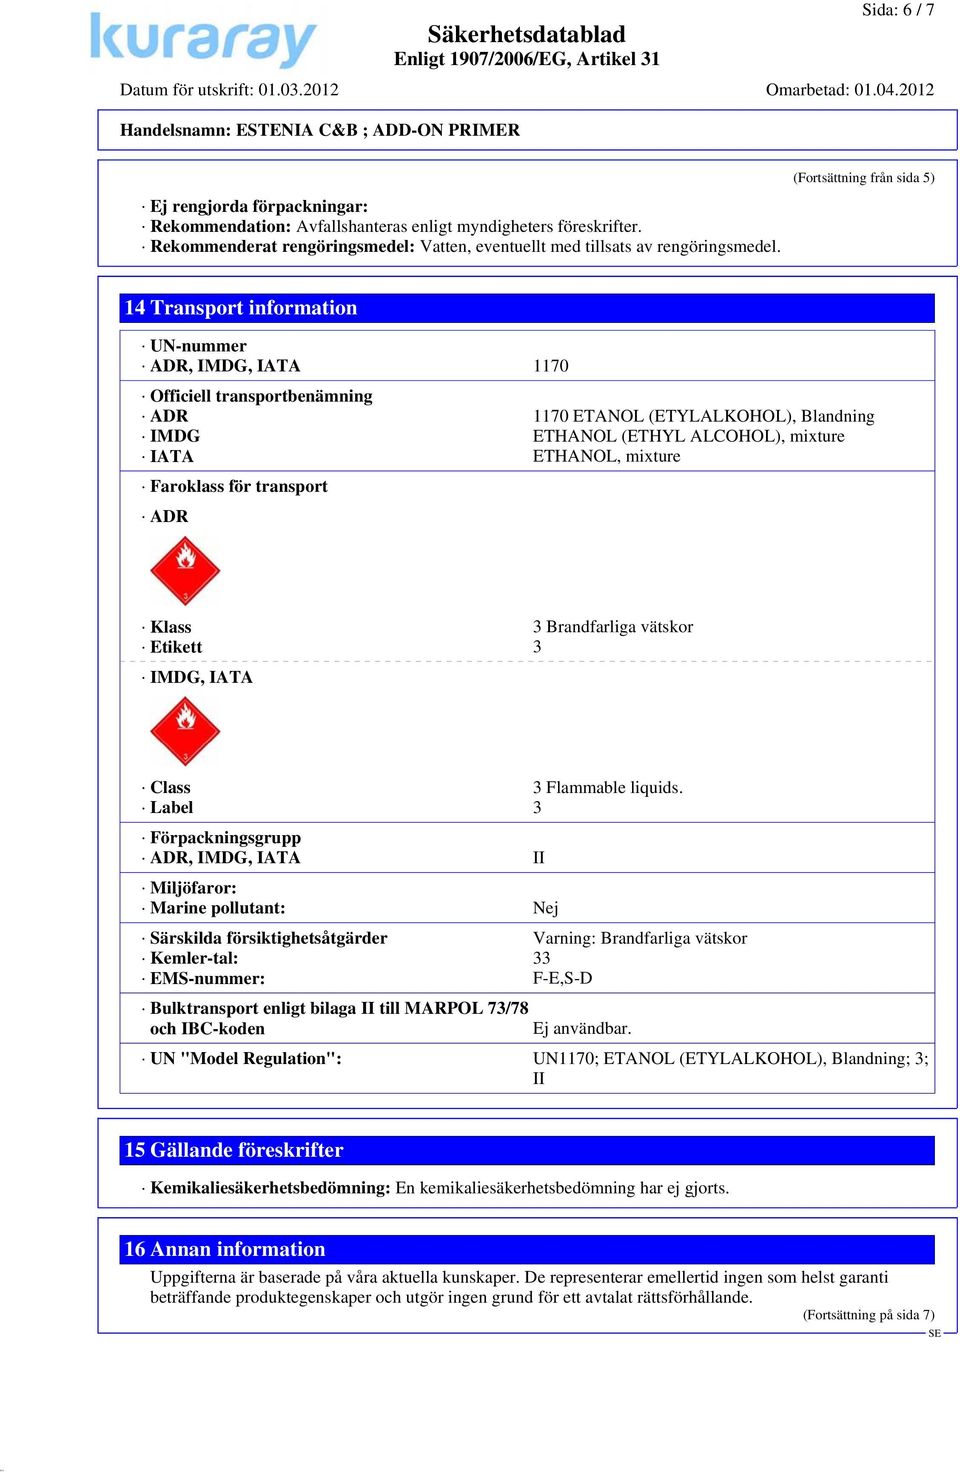 ETHANOL, mixture Faroklass för transport ADR Klass 3 Brandfarliga vätskor Etikett 3 IMDG, IATA Class 3 Flammable liquids.